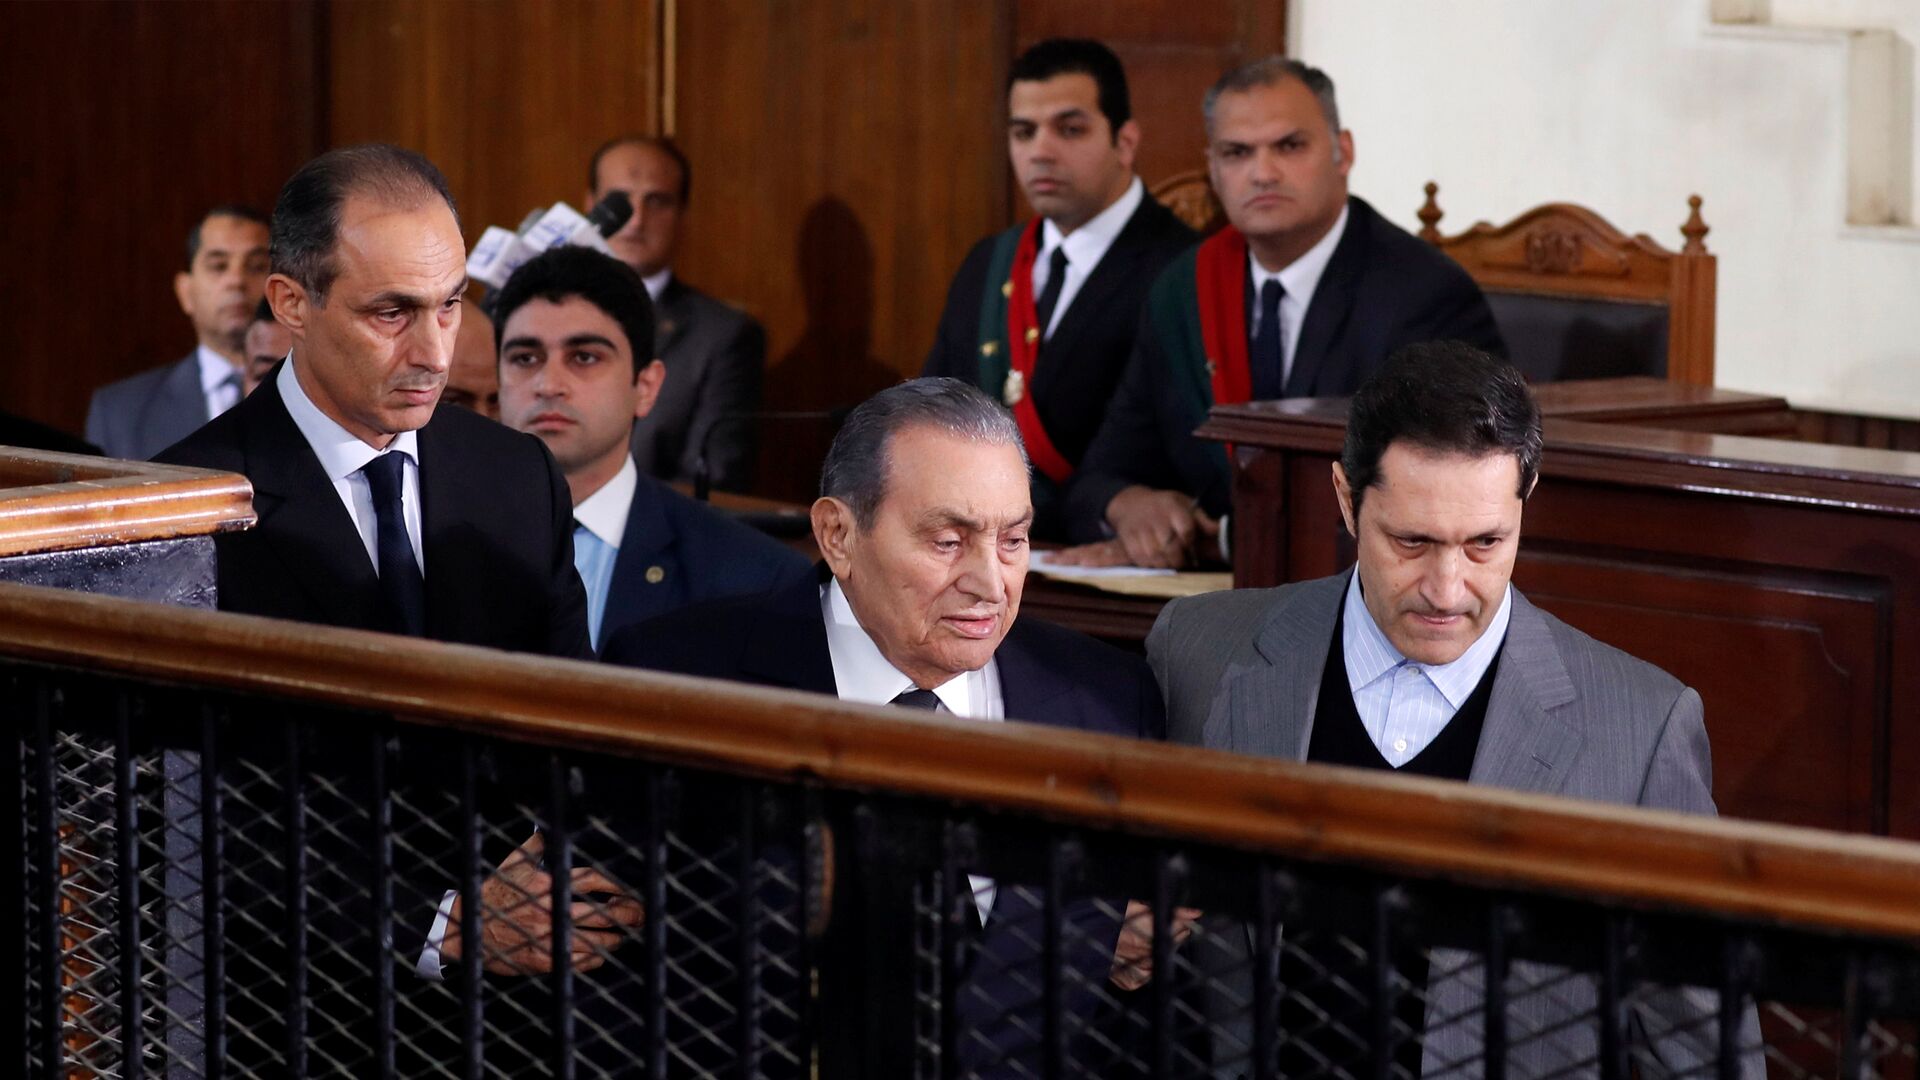 أول تحرك رسمي من أسرة مبارك بعد قرار الاتحاد الأوروبي برفع العقوبات -  14.03.2021, سبوتنيك عربي